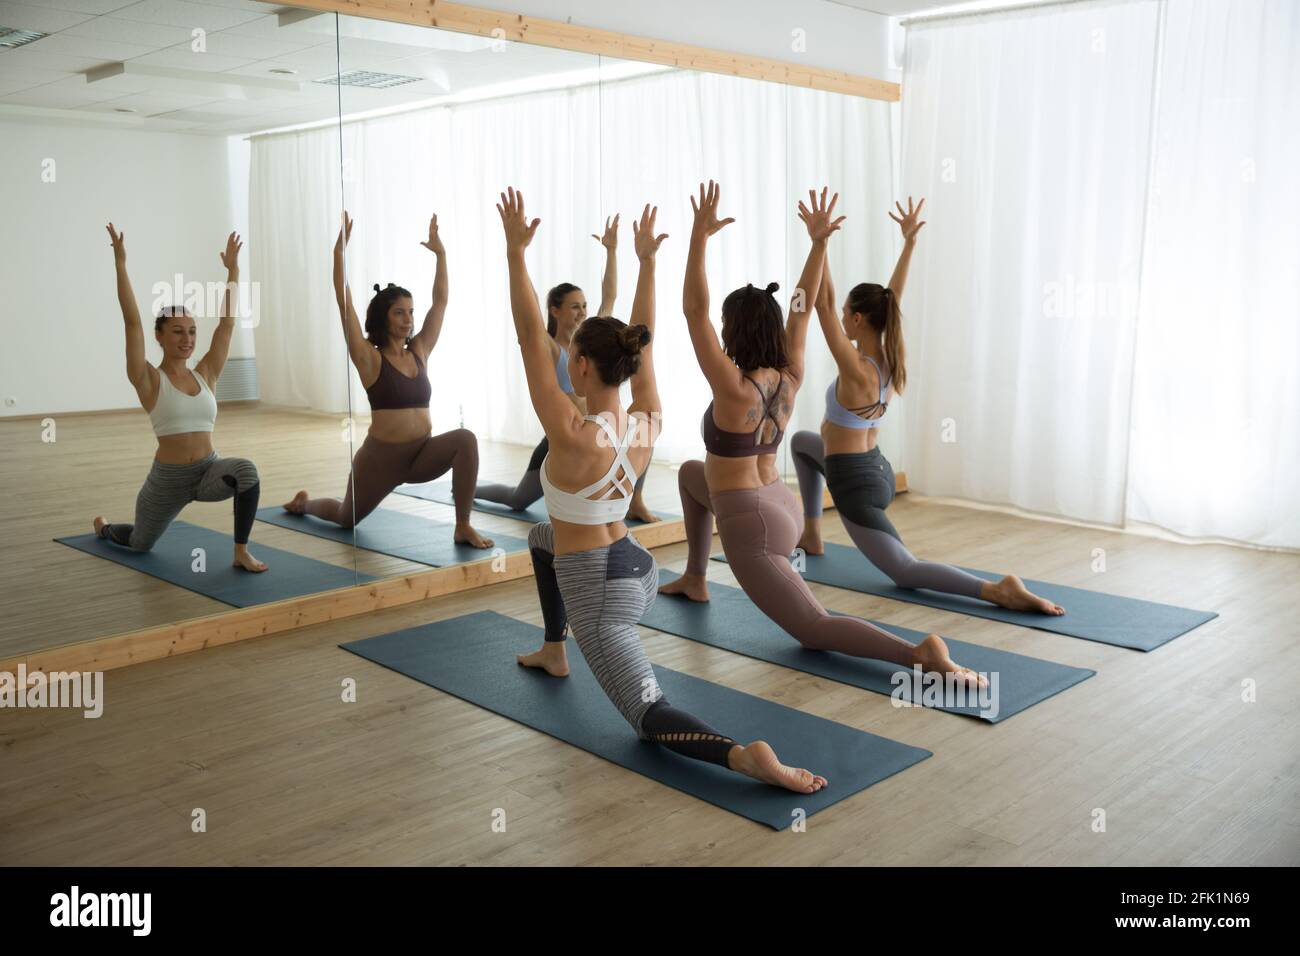 Groupe de jeunes femmes sportives en studio de yoga, pratiquant le yoga pose devant le miroir. Un style de vie sain et actif, en salle de gym Banque D'Images